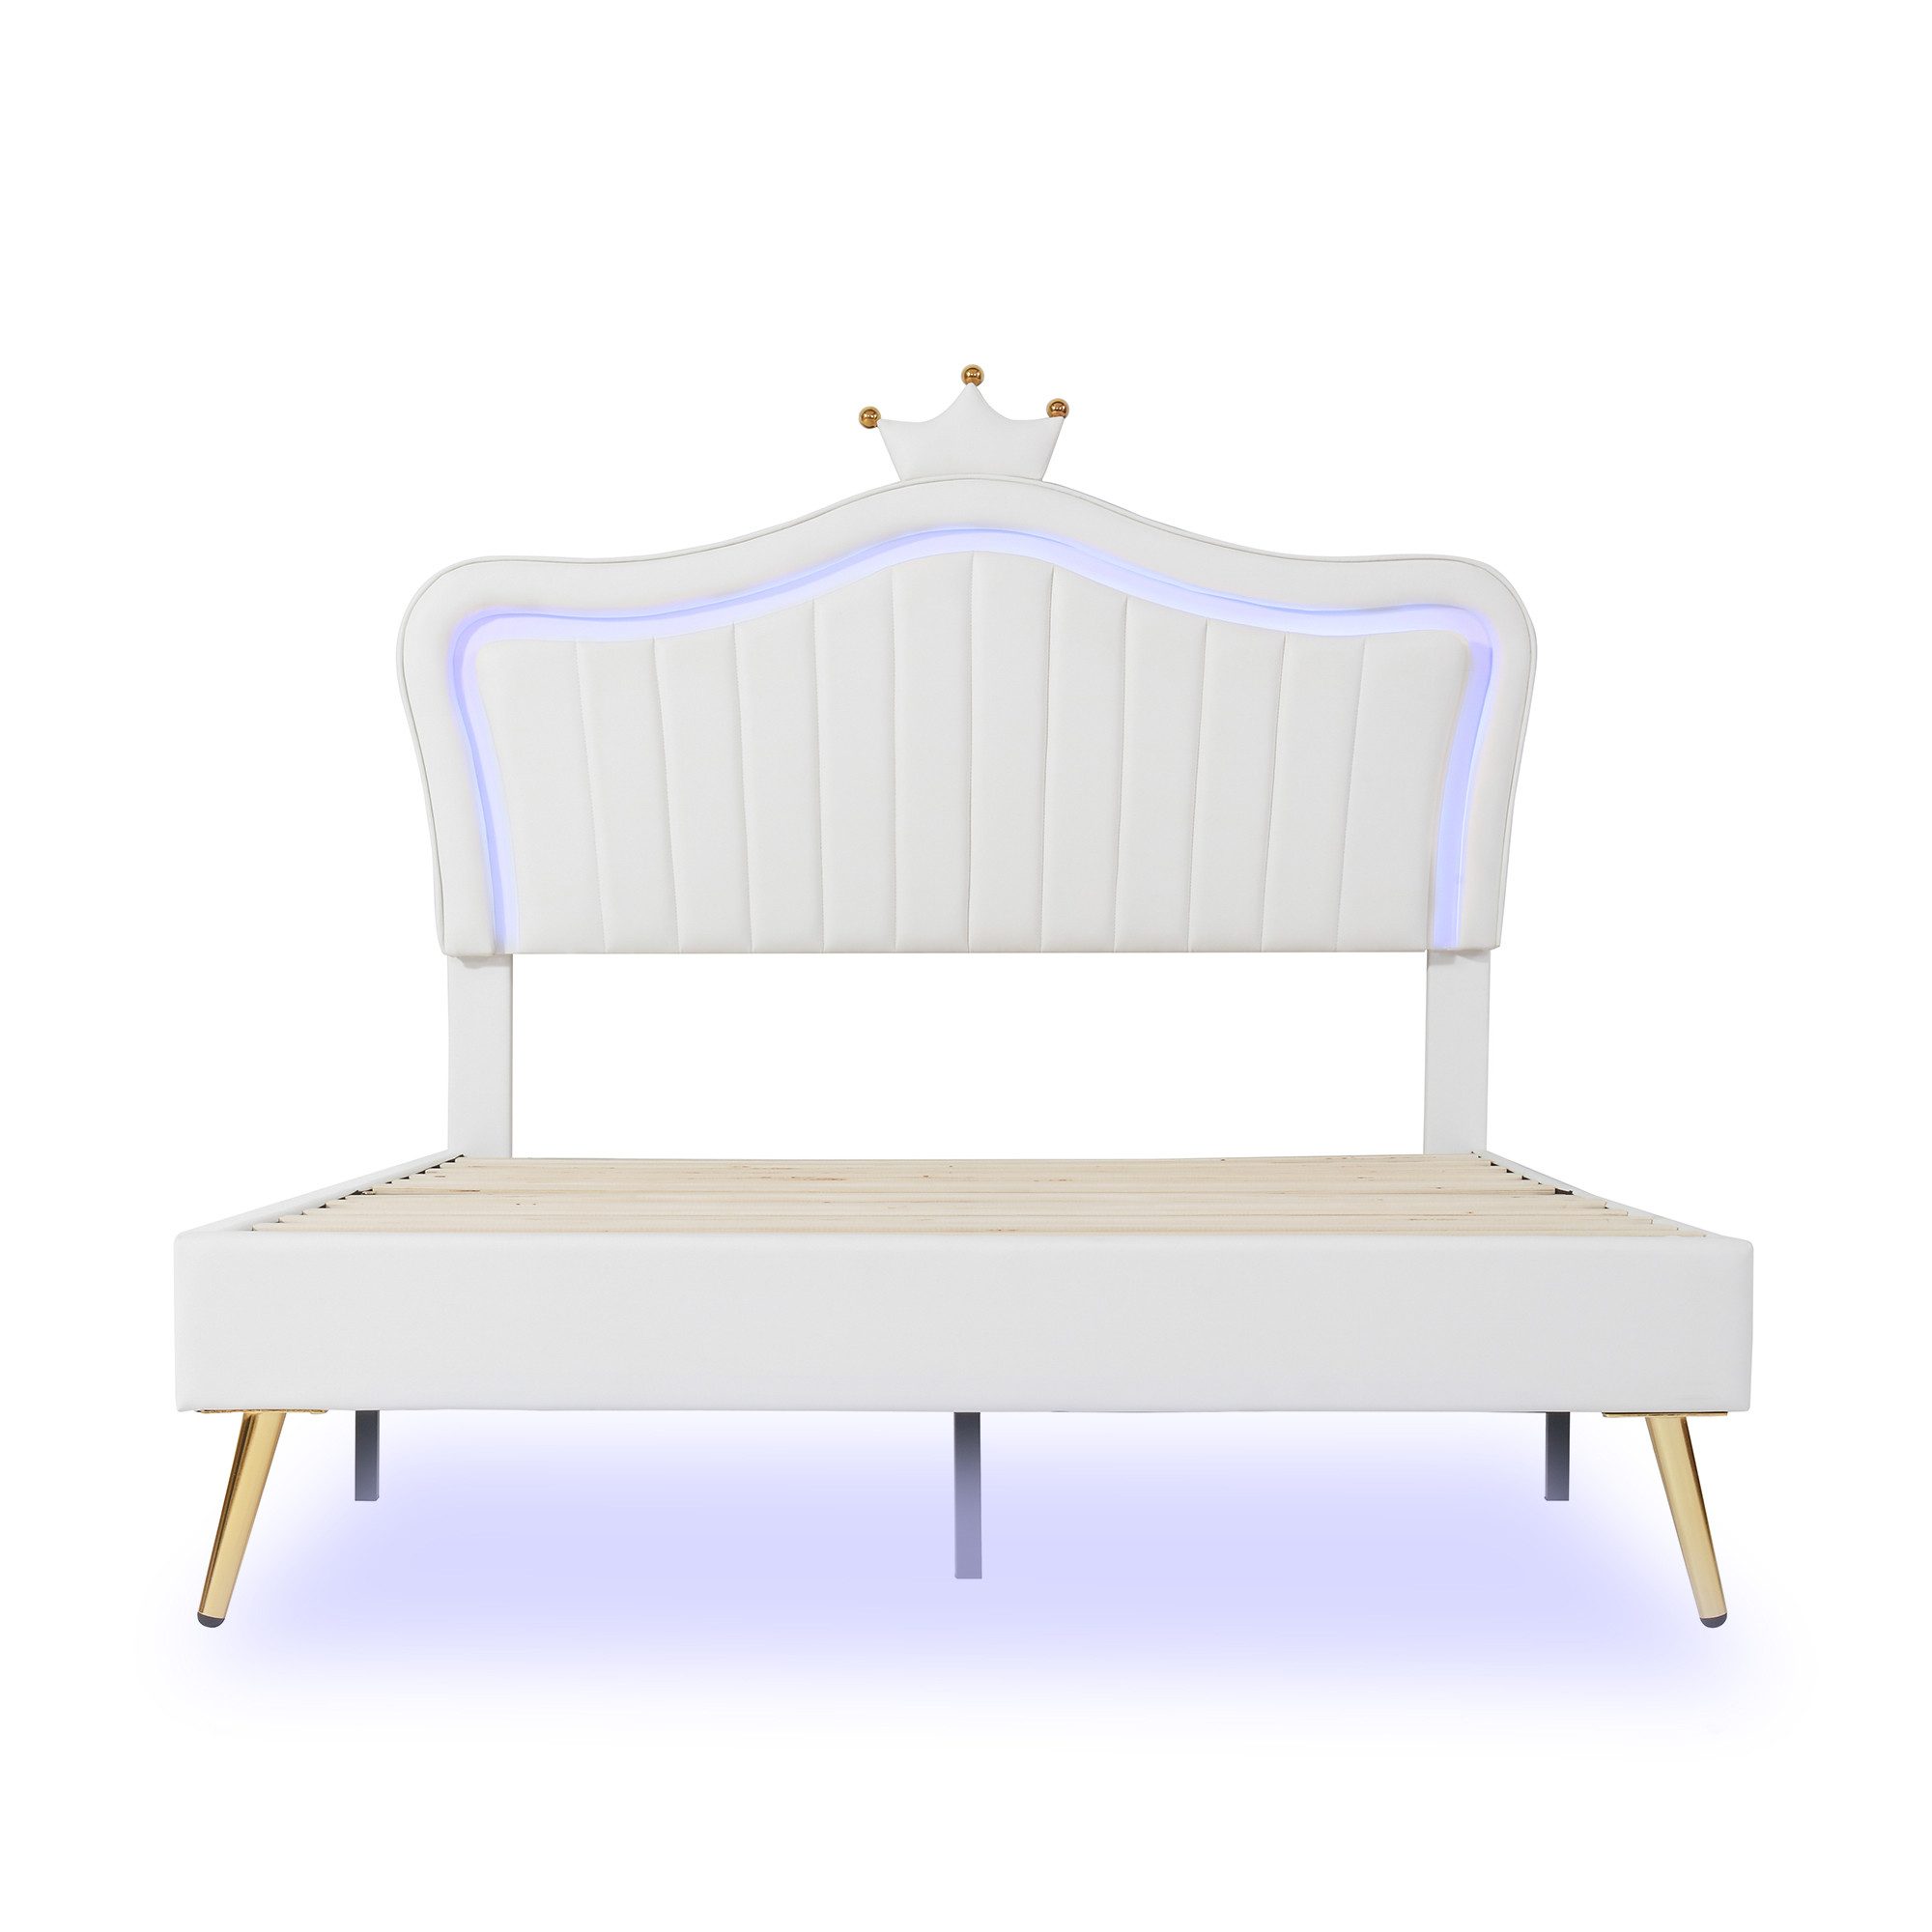 Ulife Polsterbett LED Kinderbett Einzelbett mit krone-Form Prinzessinnenbett